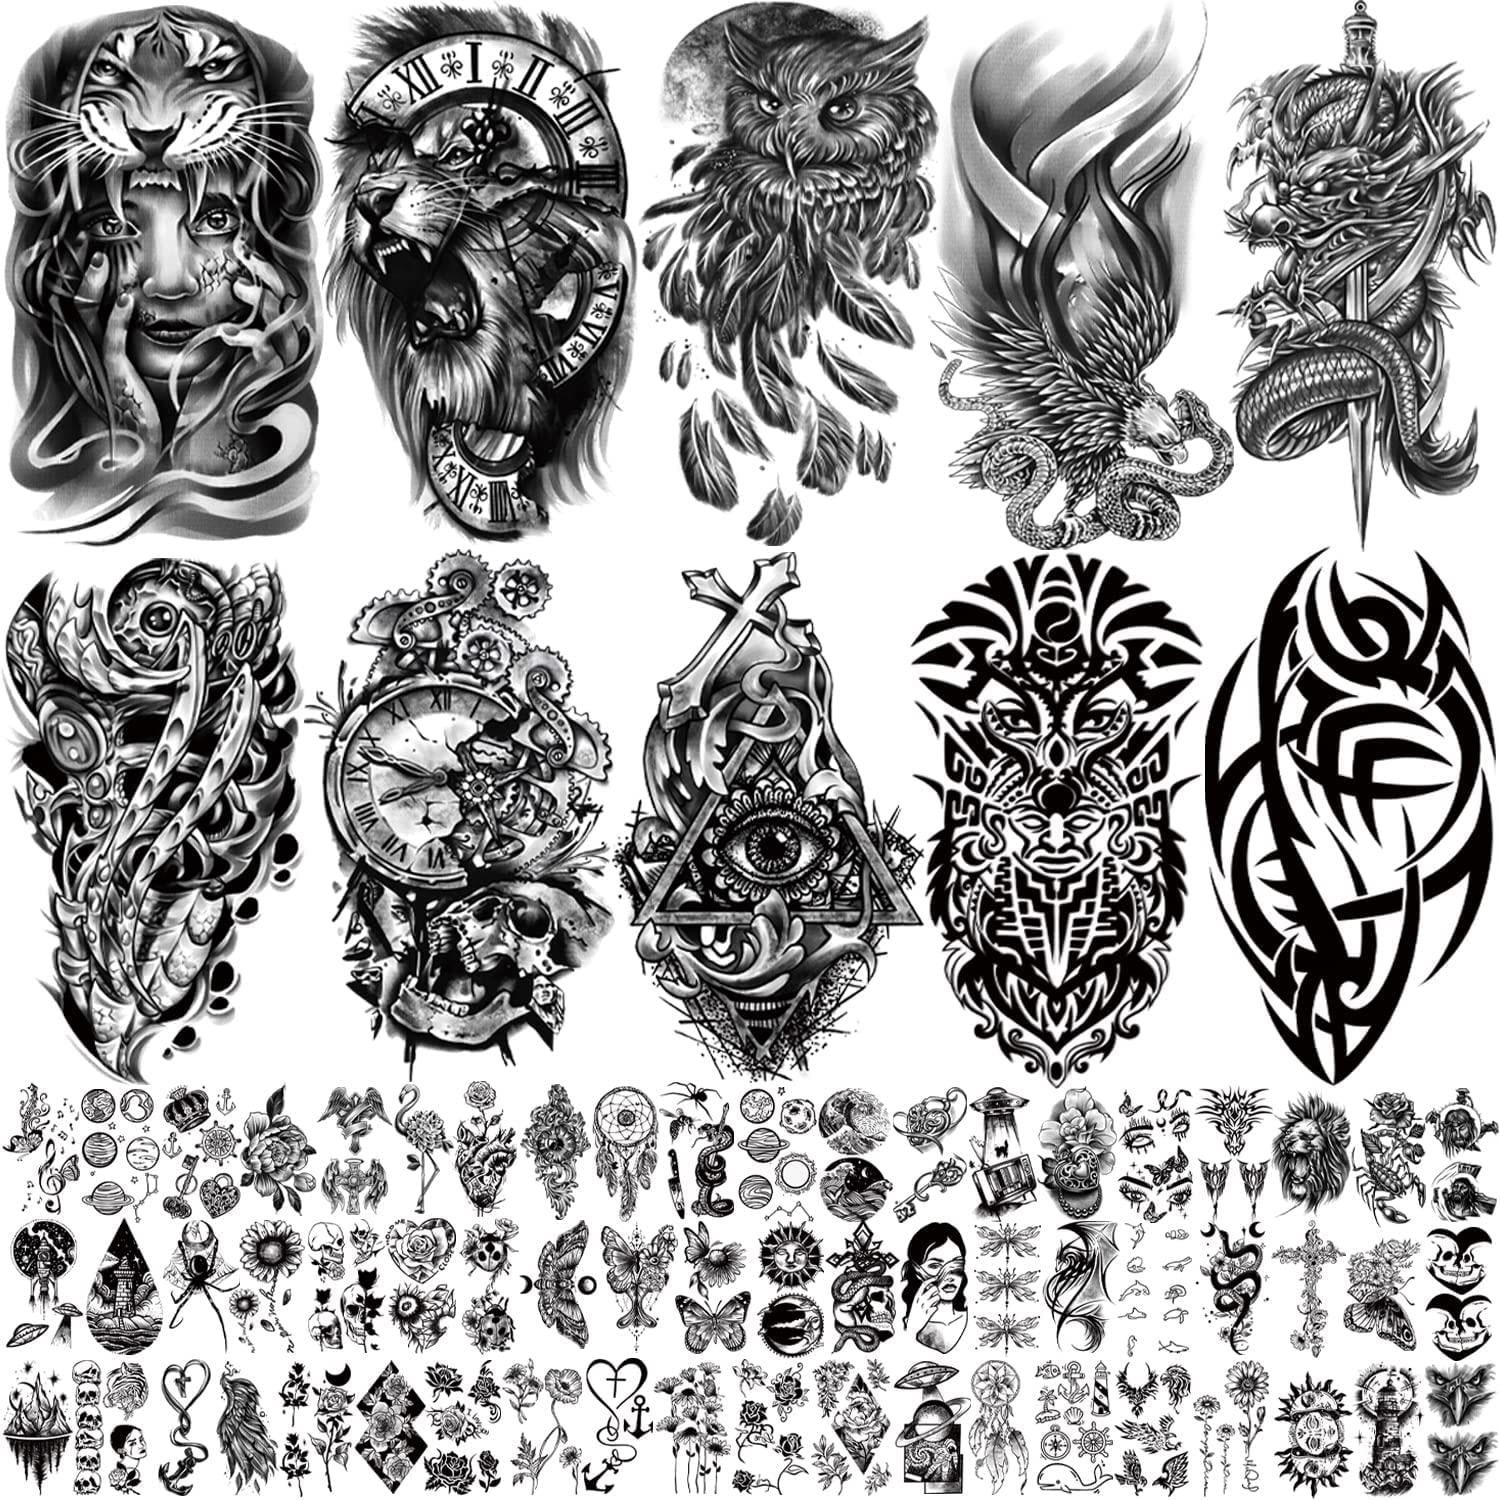 Eagle and web by John Guzman at black wolf tattoos Clayton GA : r/tattoos